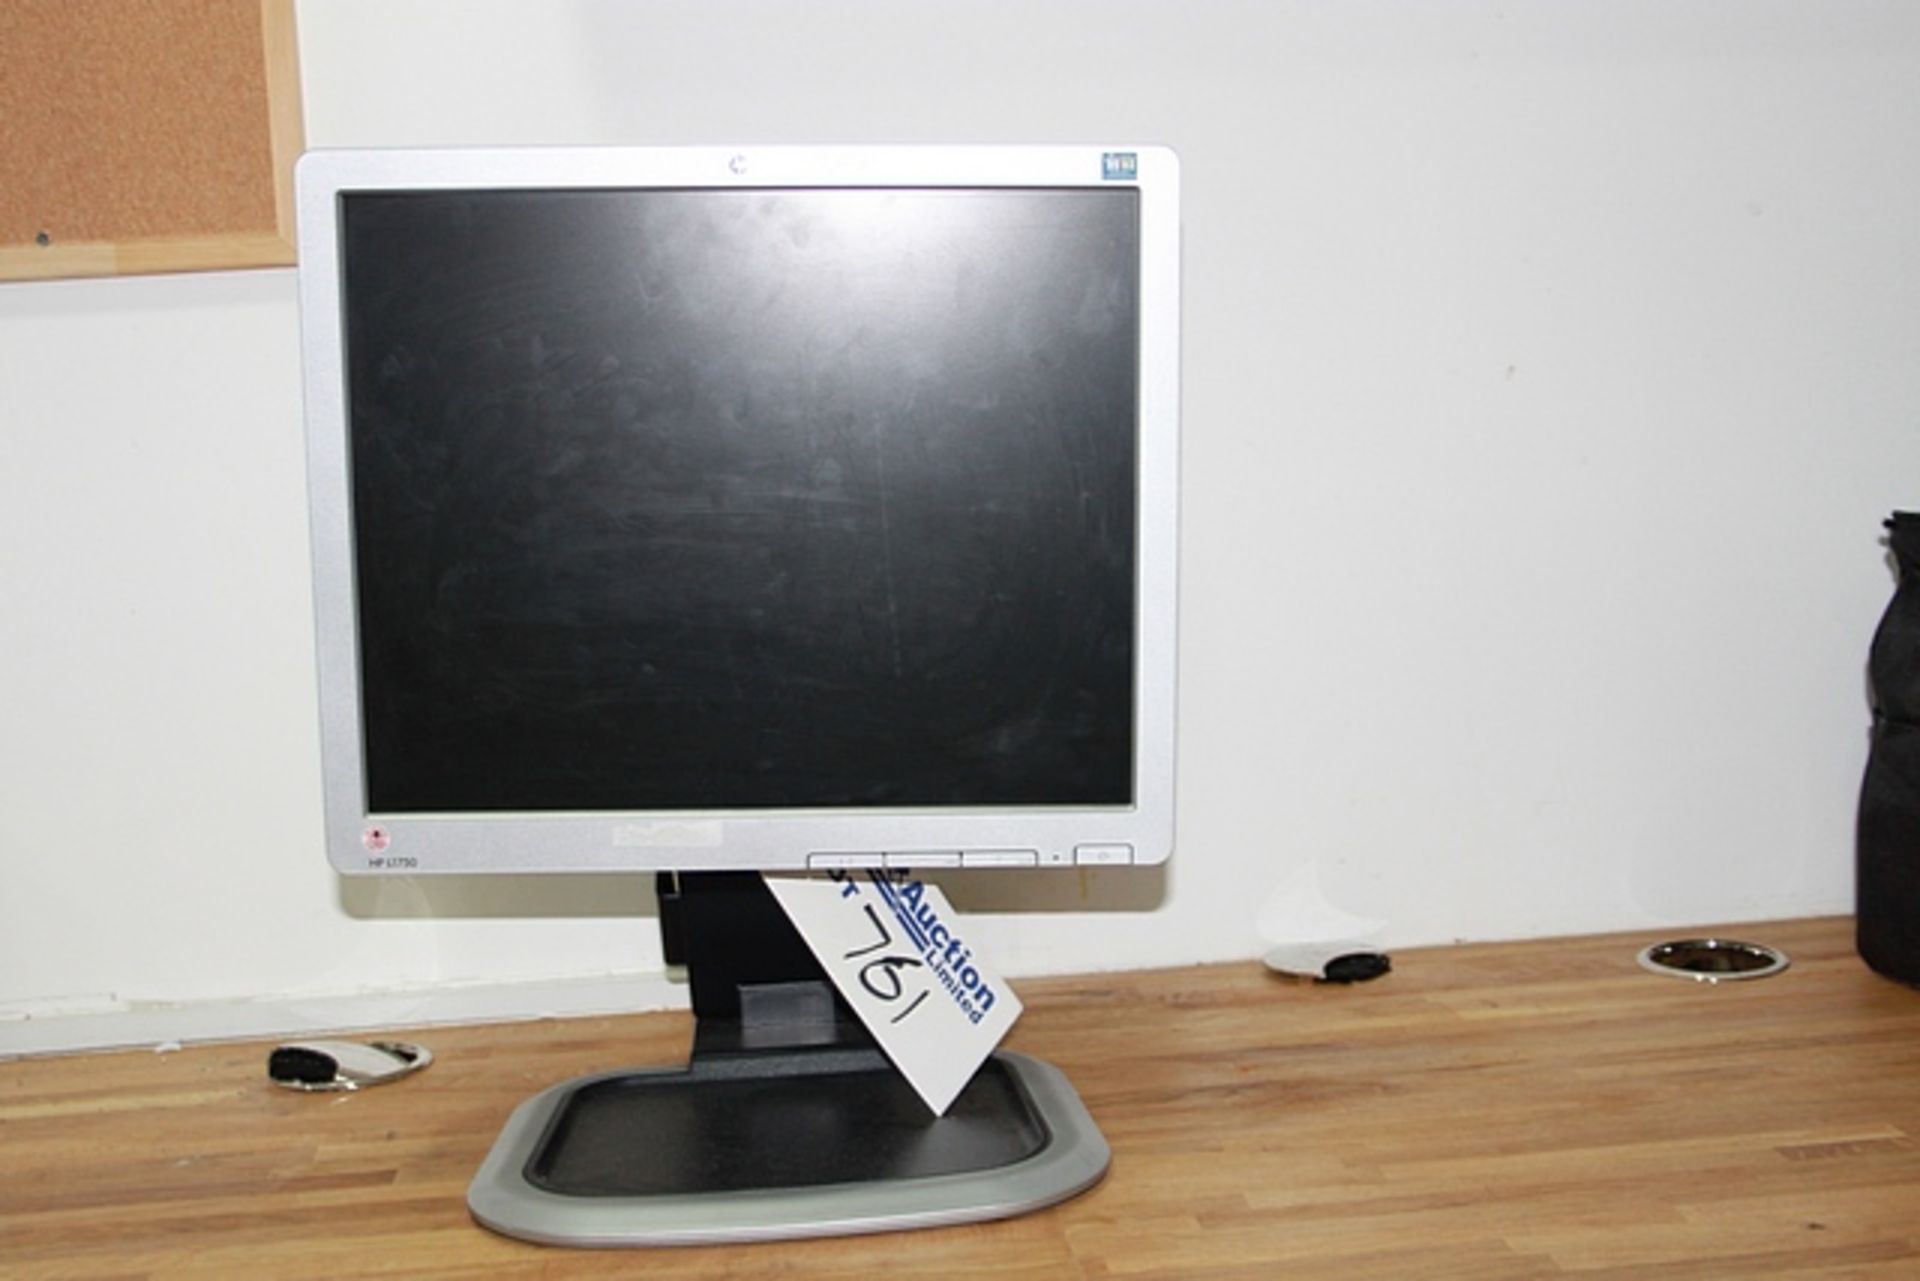 HP L1750 LCD Monitor LCD monitor / TFT active matrix 1280 x 1024 at 75 Hz